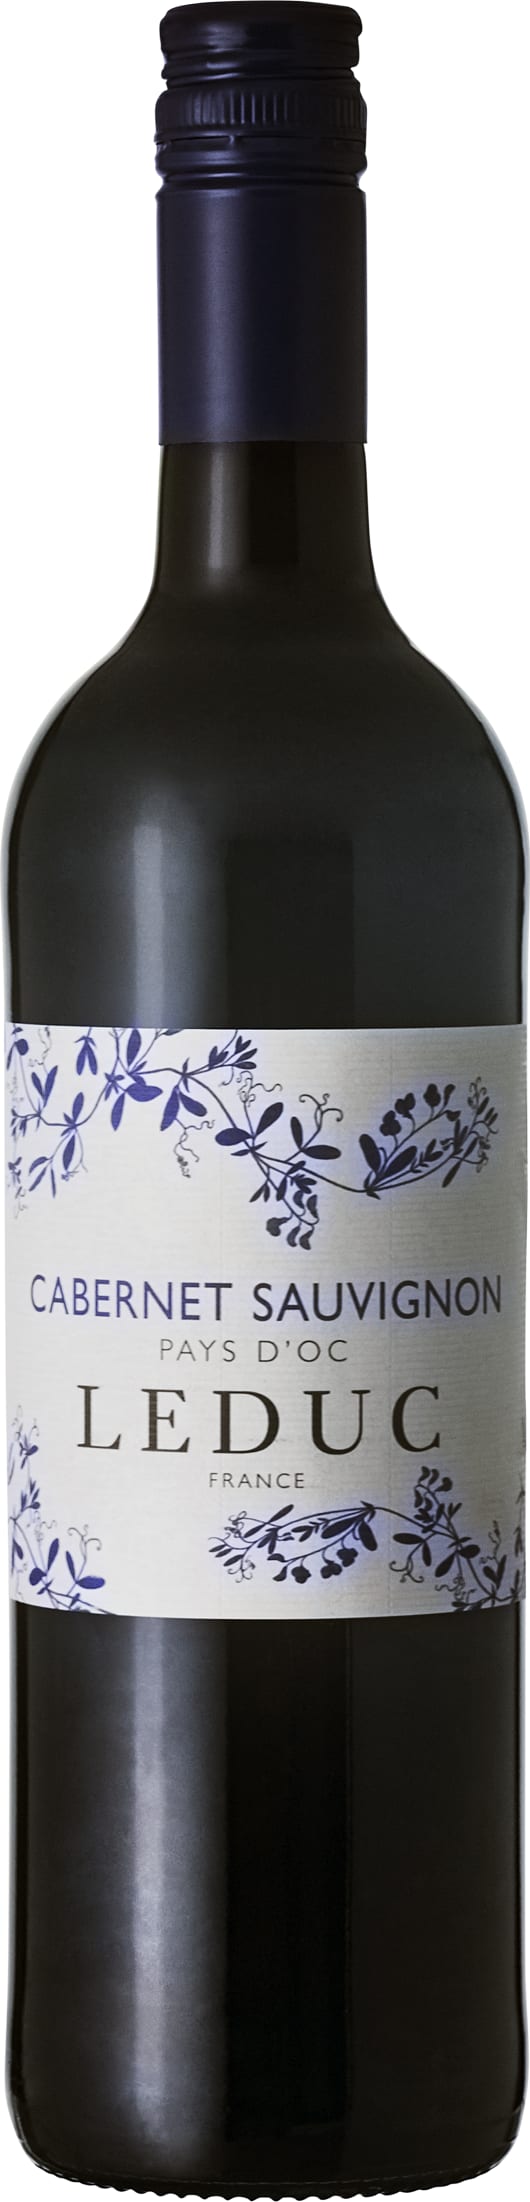 Leduc Cabernet Sauvignon 2021 6x75cl - Just Wines 